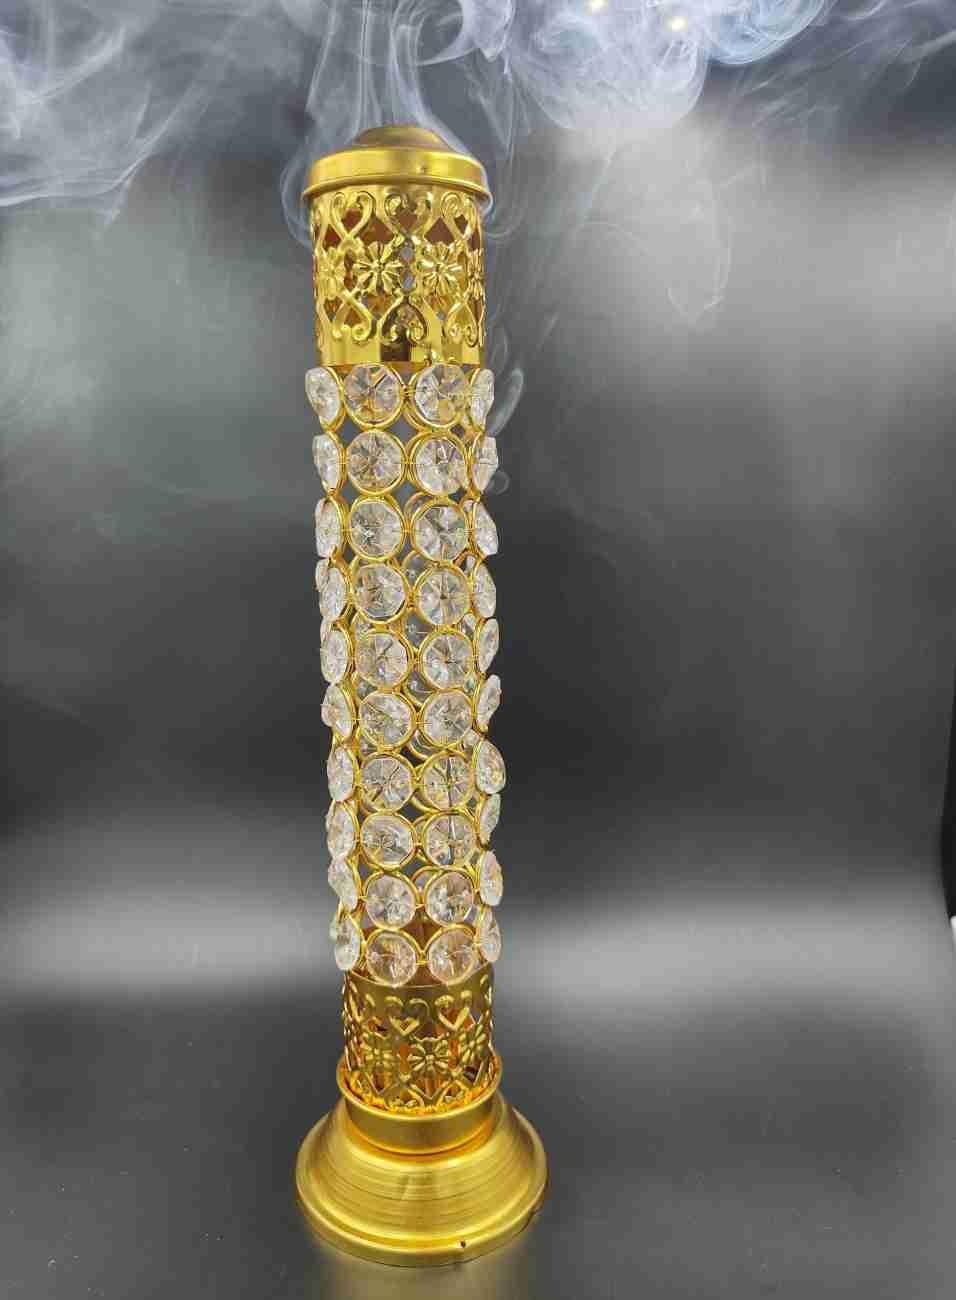 Incense Stick Holder with Ash Catcher| 25cm Height | Brass Crystal Incense Burner| Pack of 1 - Deal IND.